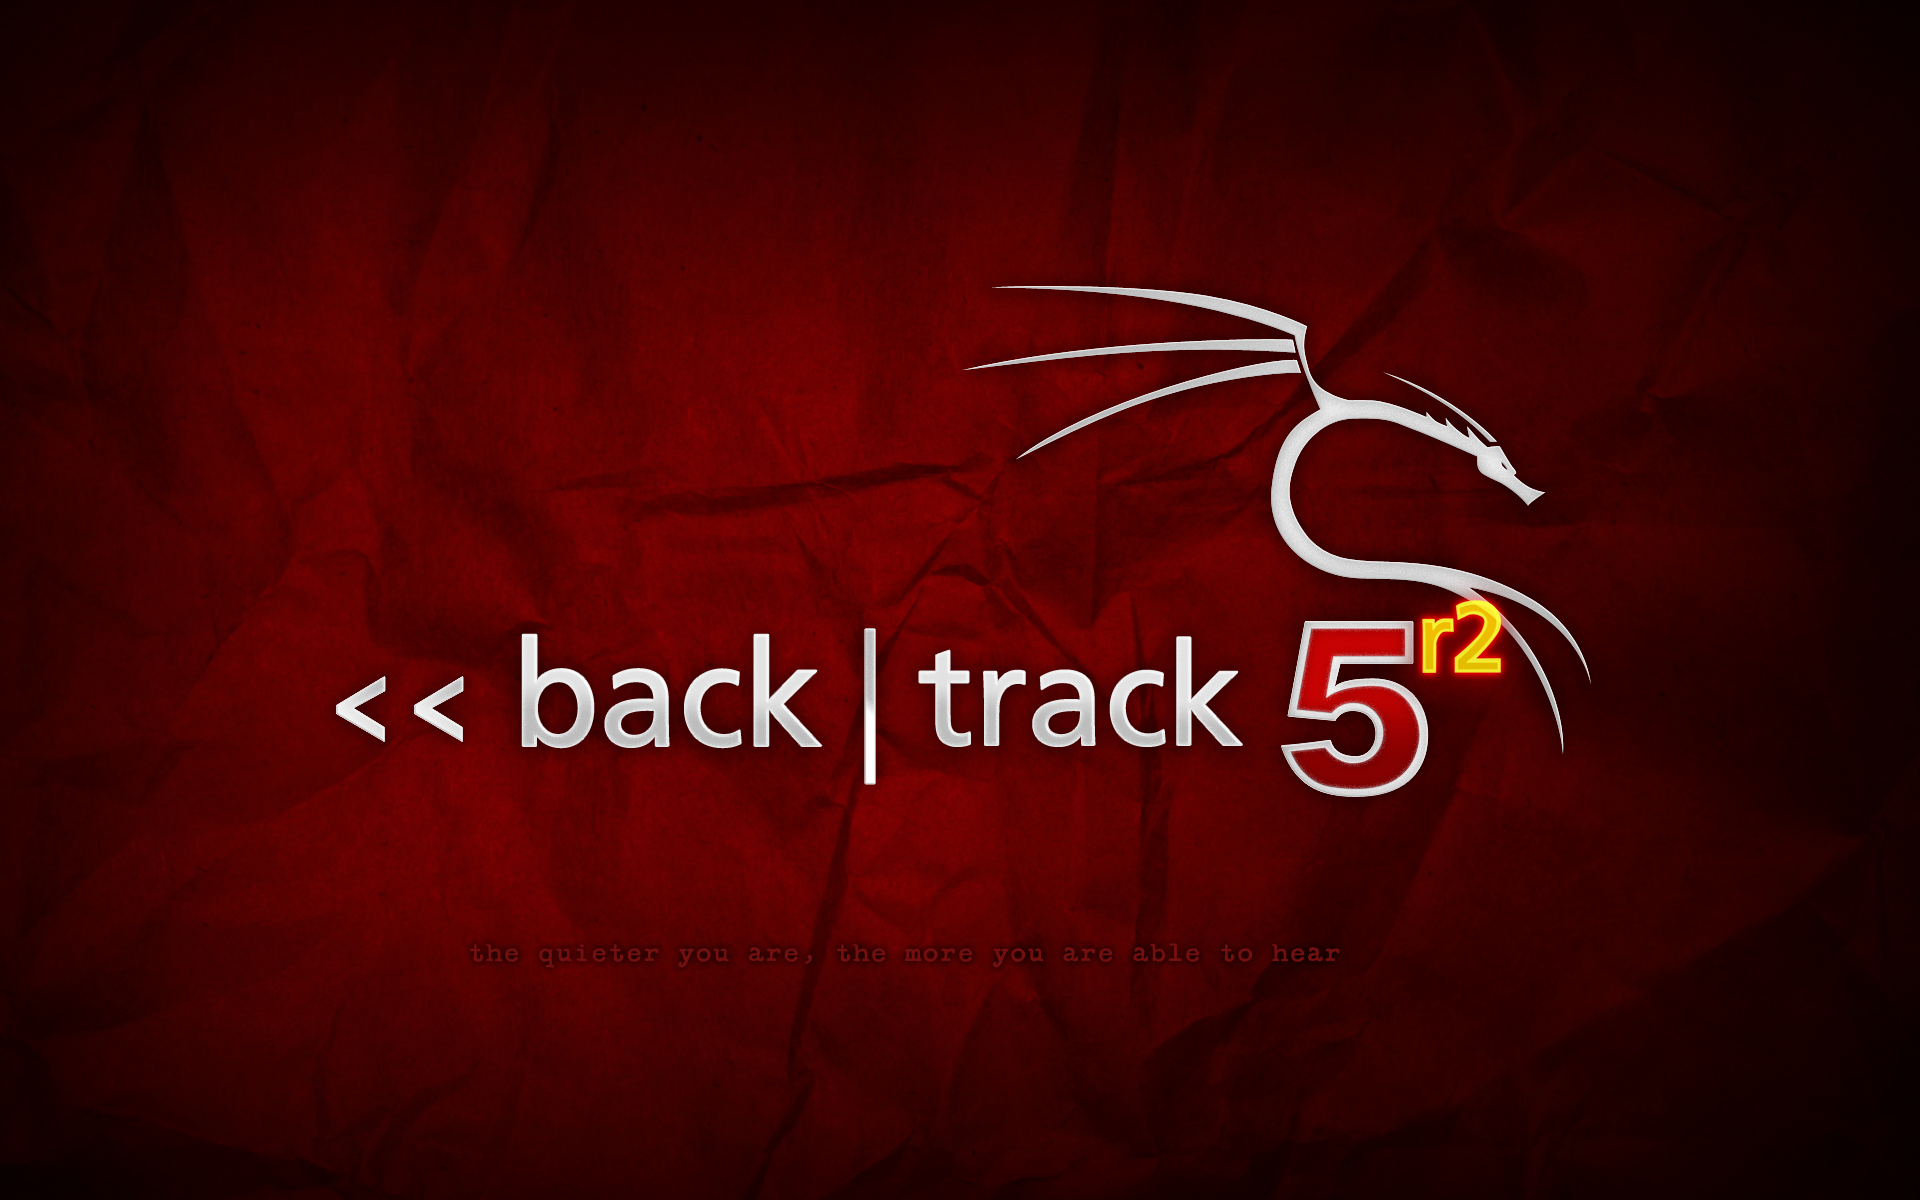 backtrack-5r2.png